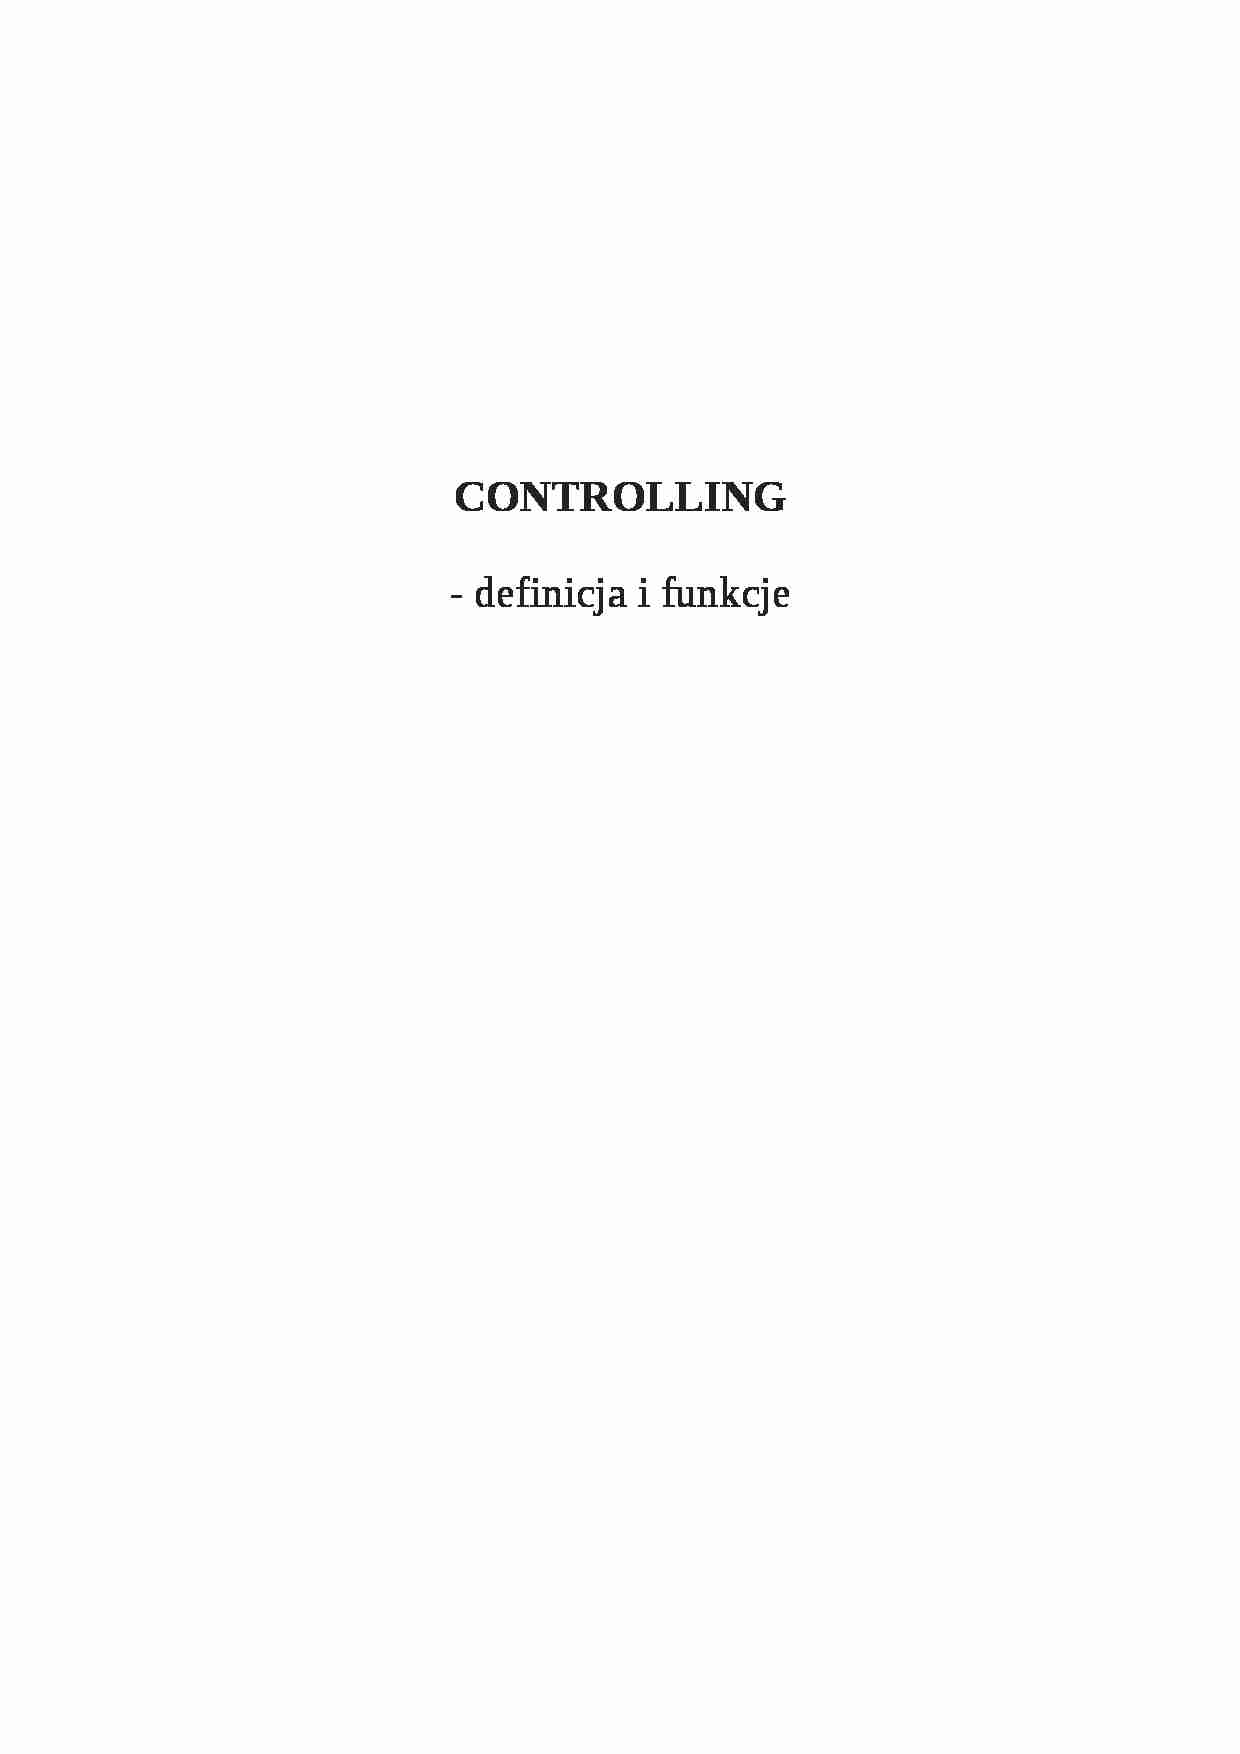 Ccontrolling -  definicja i funkcje - strona 1